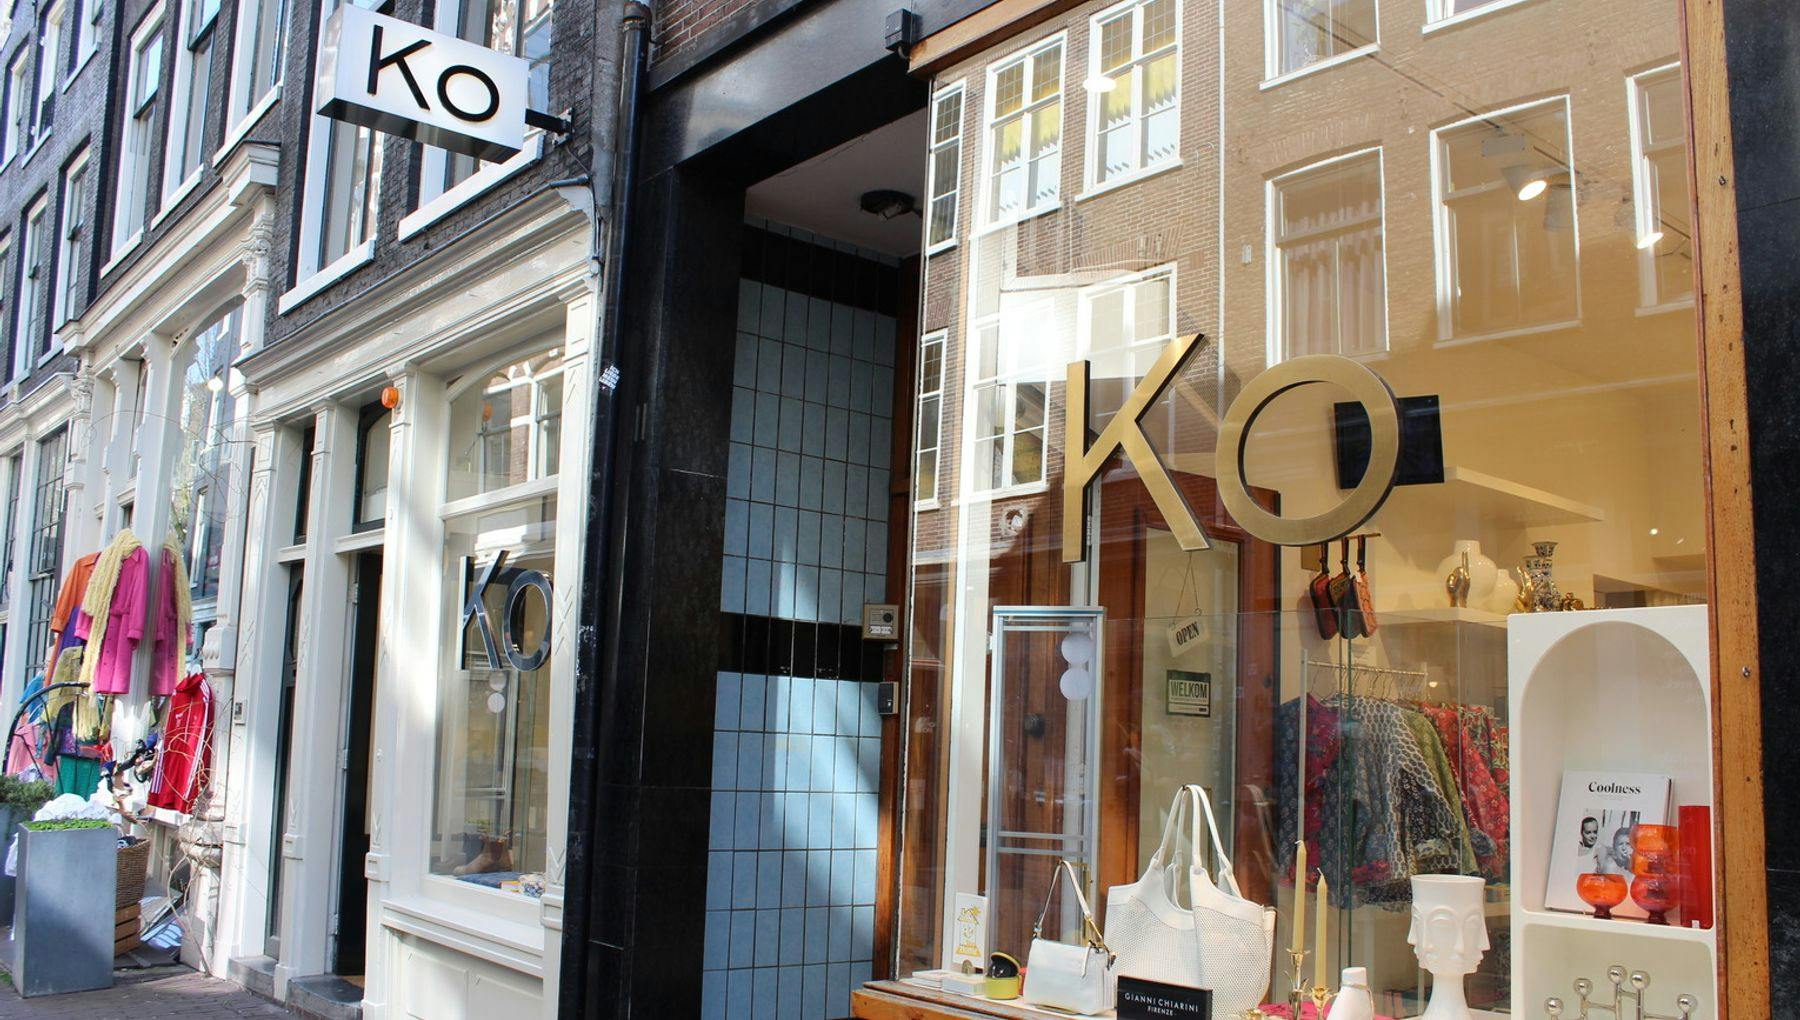 Ko Concept Store exterior on the Negen Straatjes